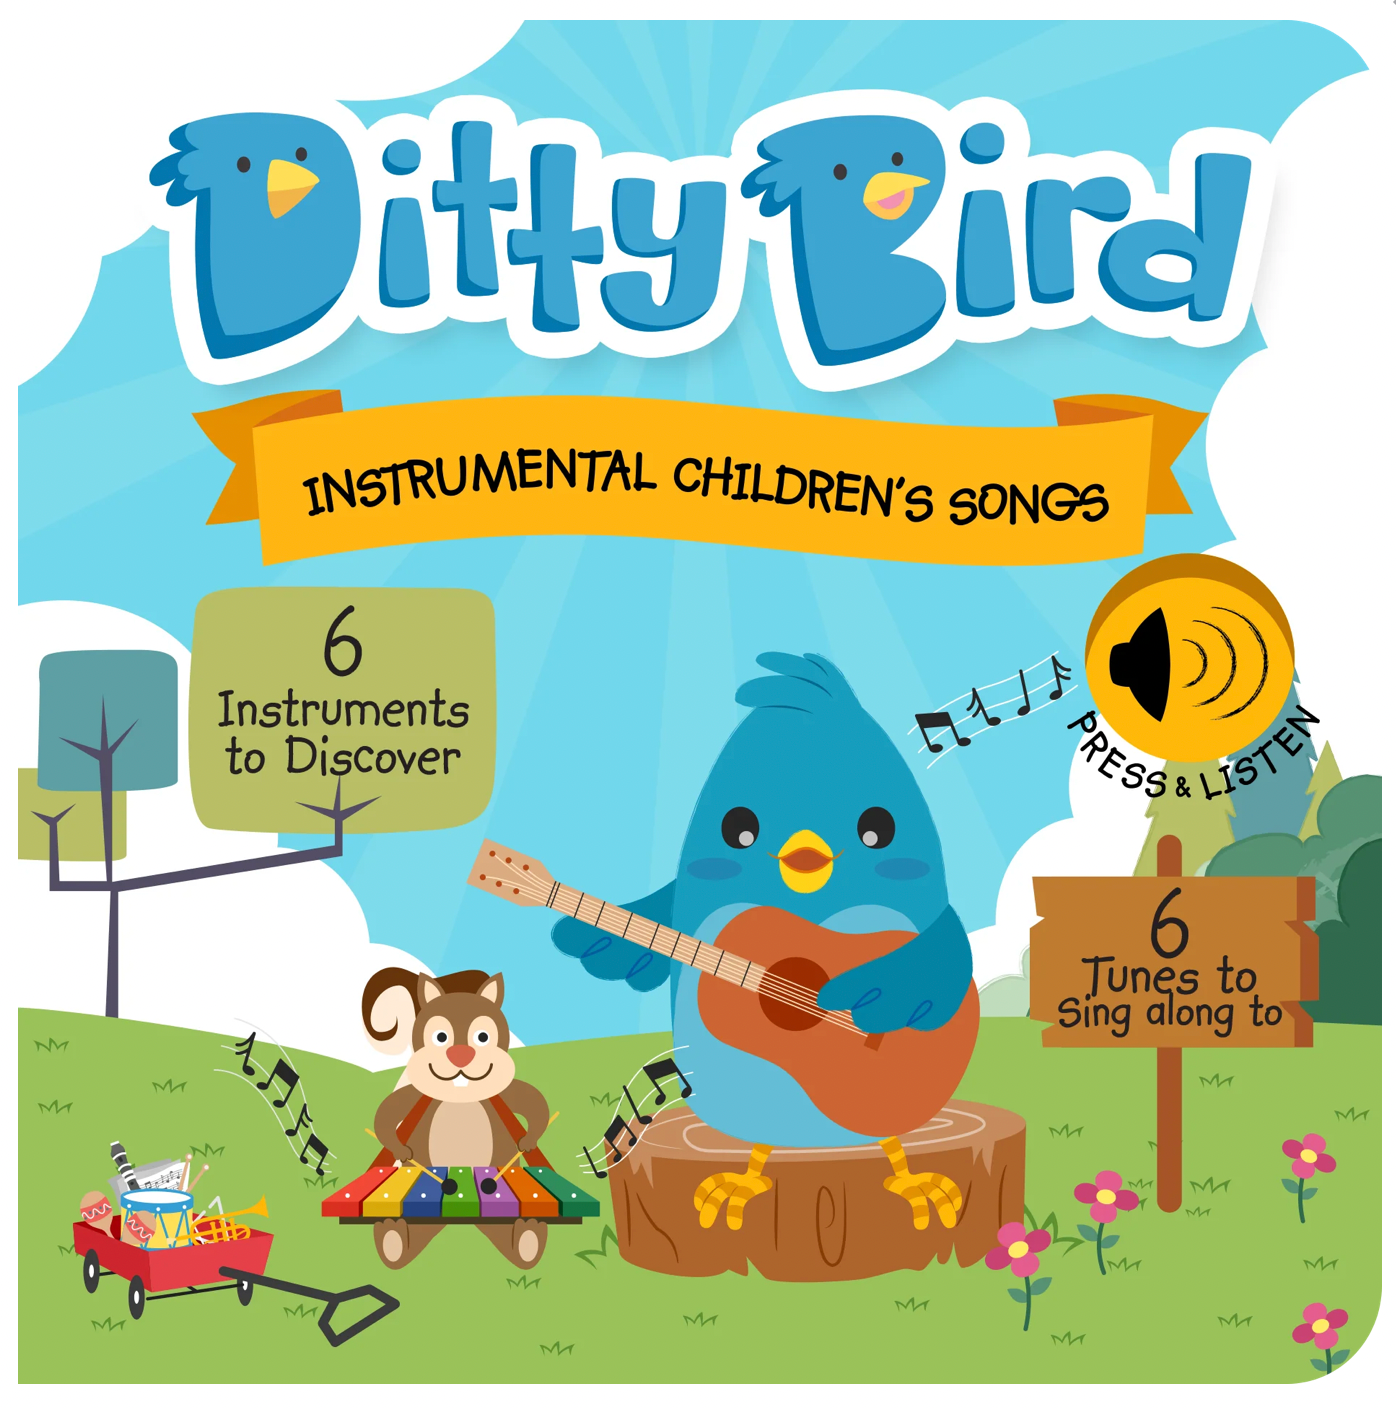 Ditty Bird: Instrumental Children's Songs